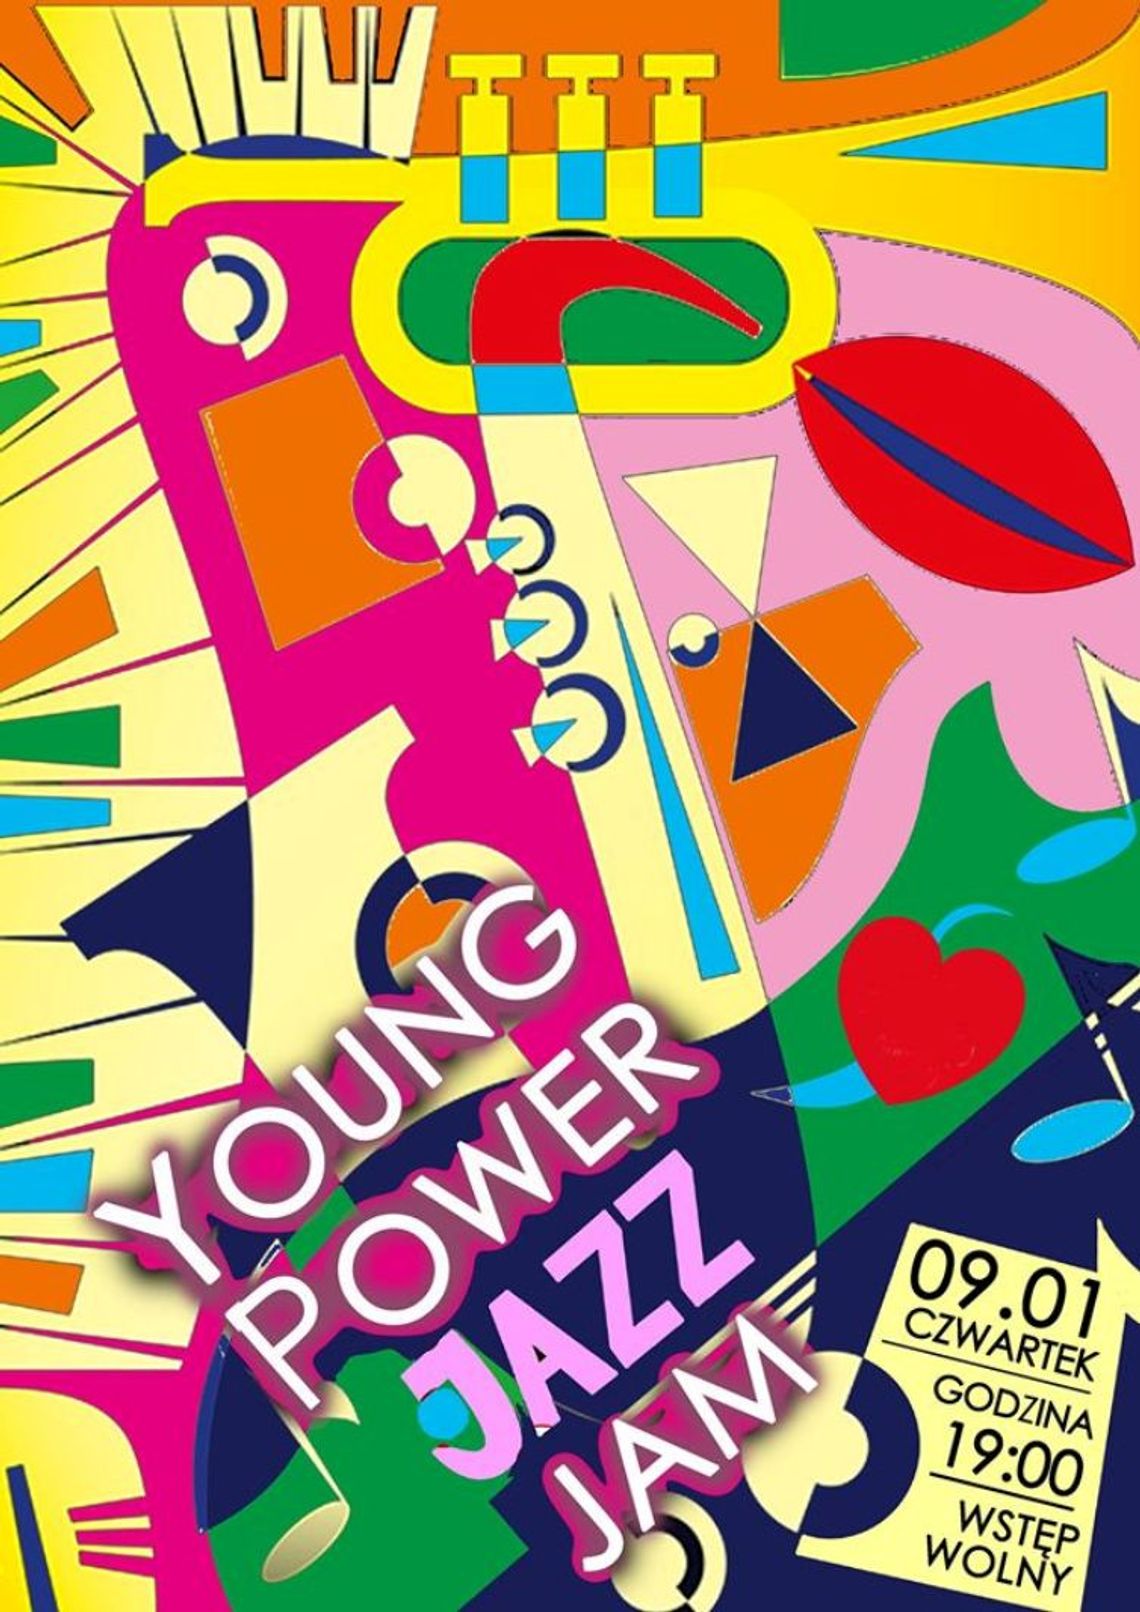 Young power jazz jam